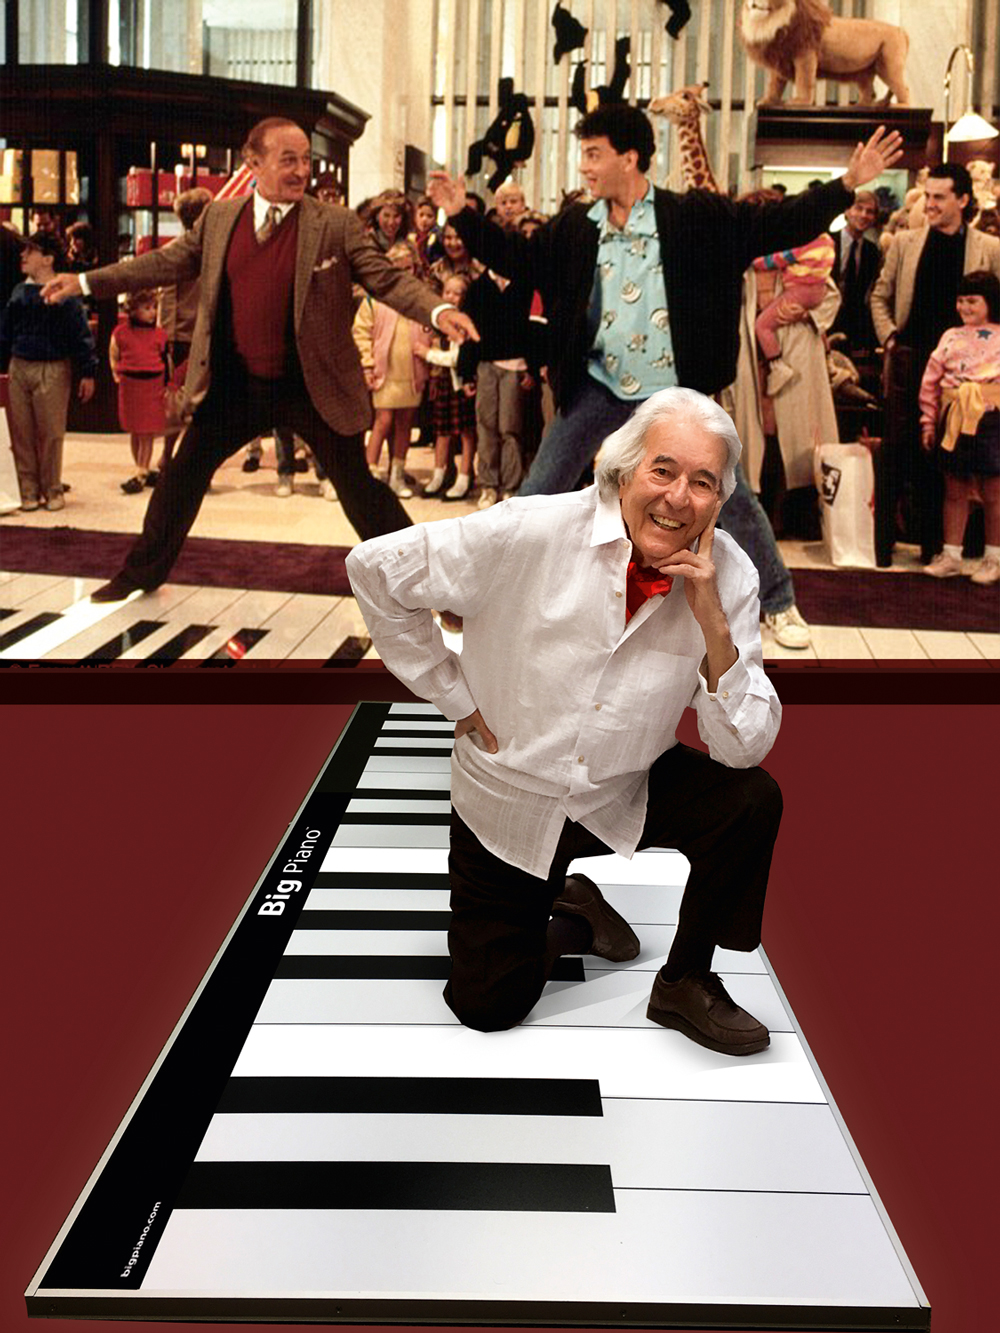 DANÇA - Saraceni e o piano da inesquecível cena de Quero Ser Grande, com Tom Hanks: como Fred Astaire